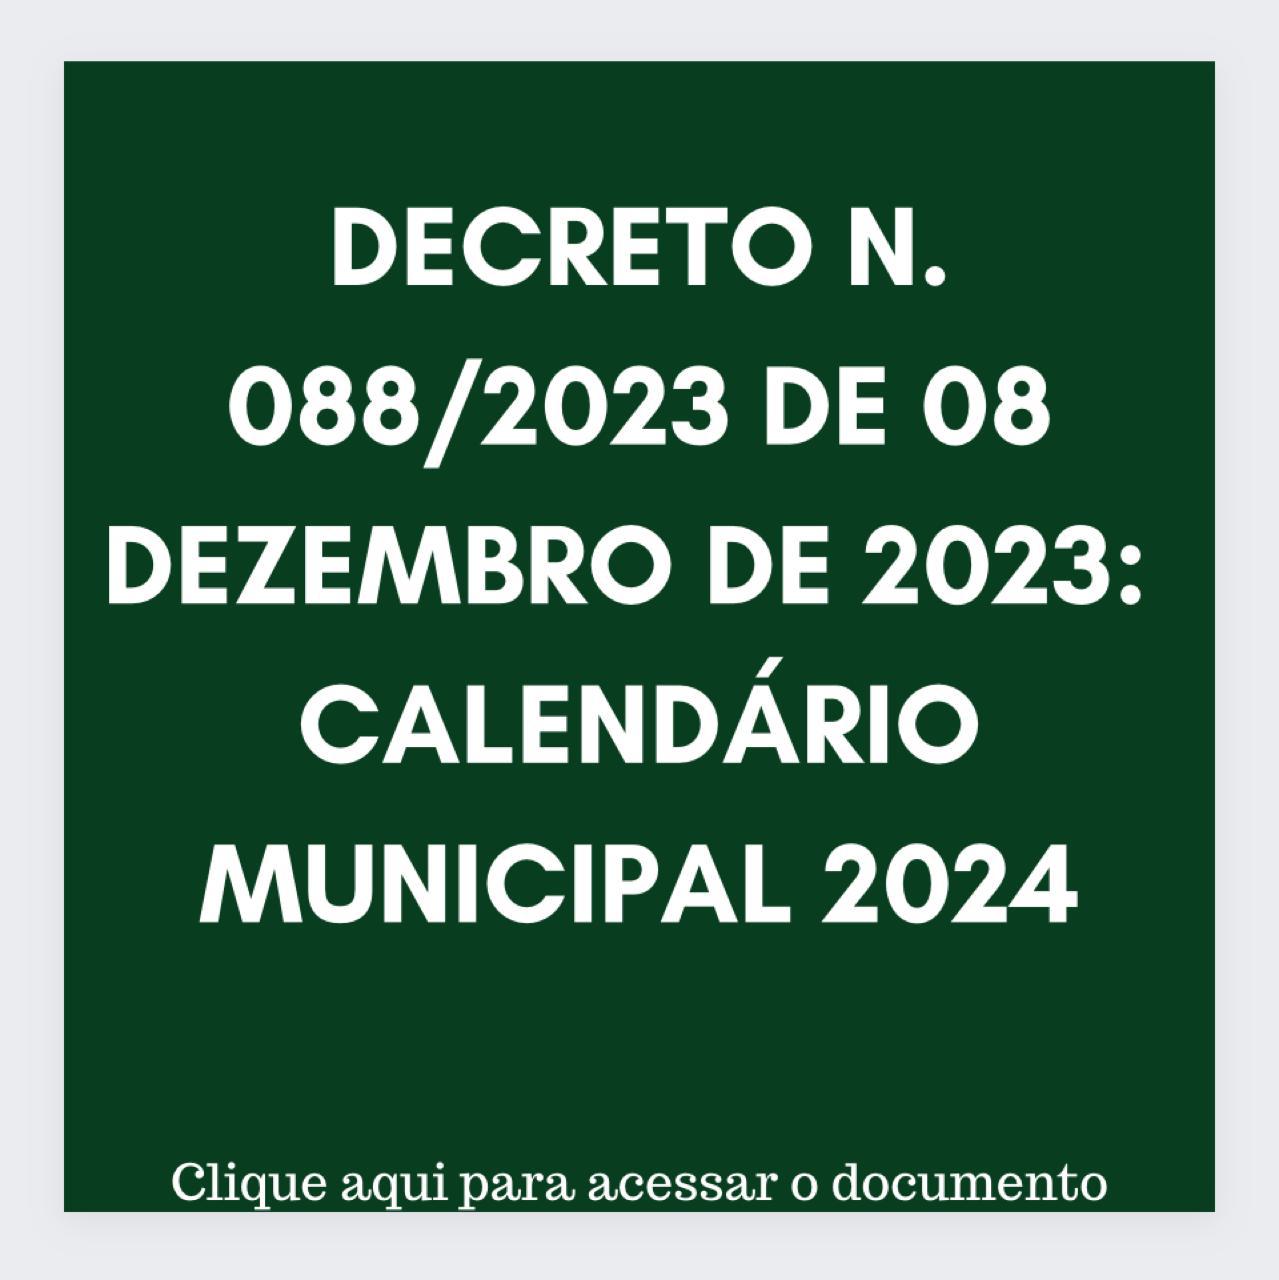 CALENDÁRIO MUNICIPAL 2024